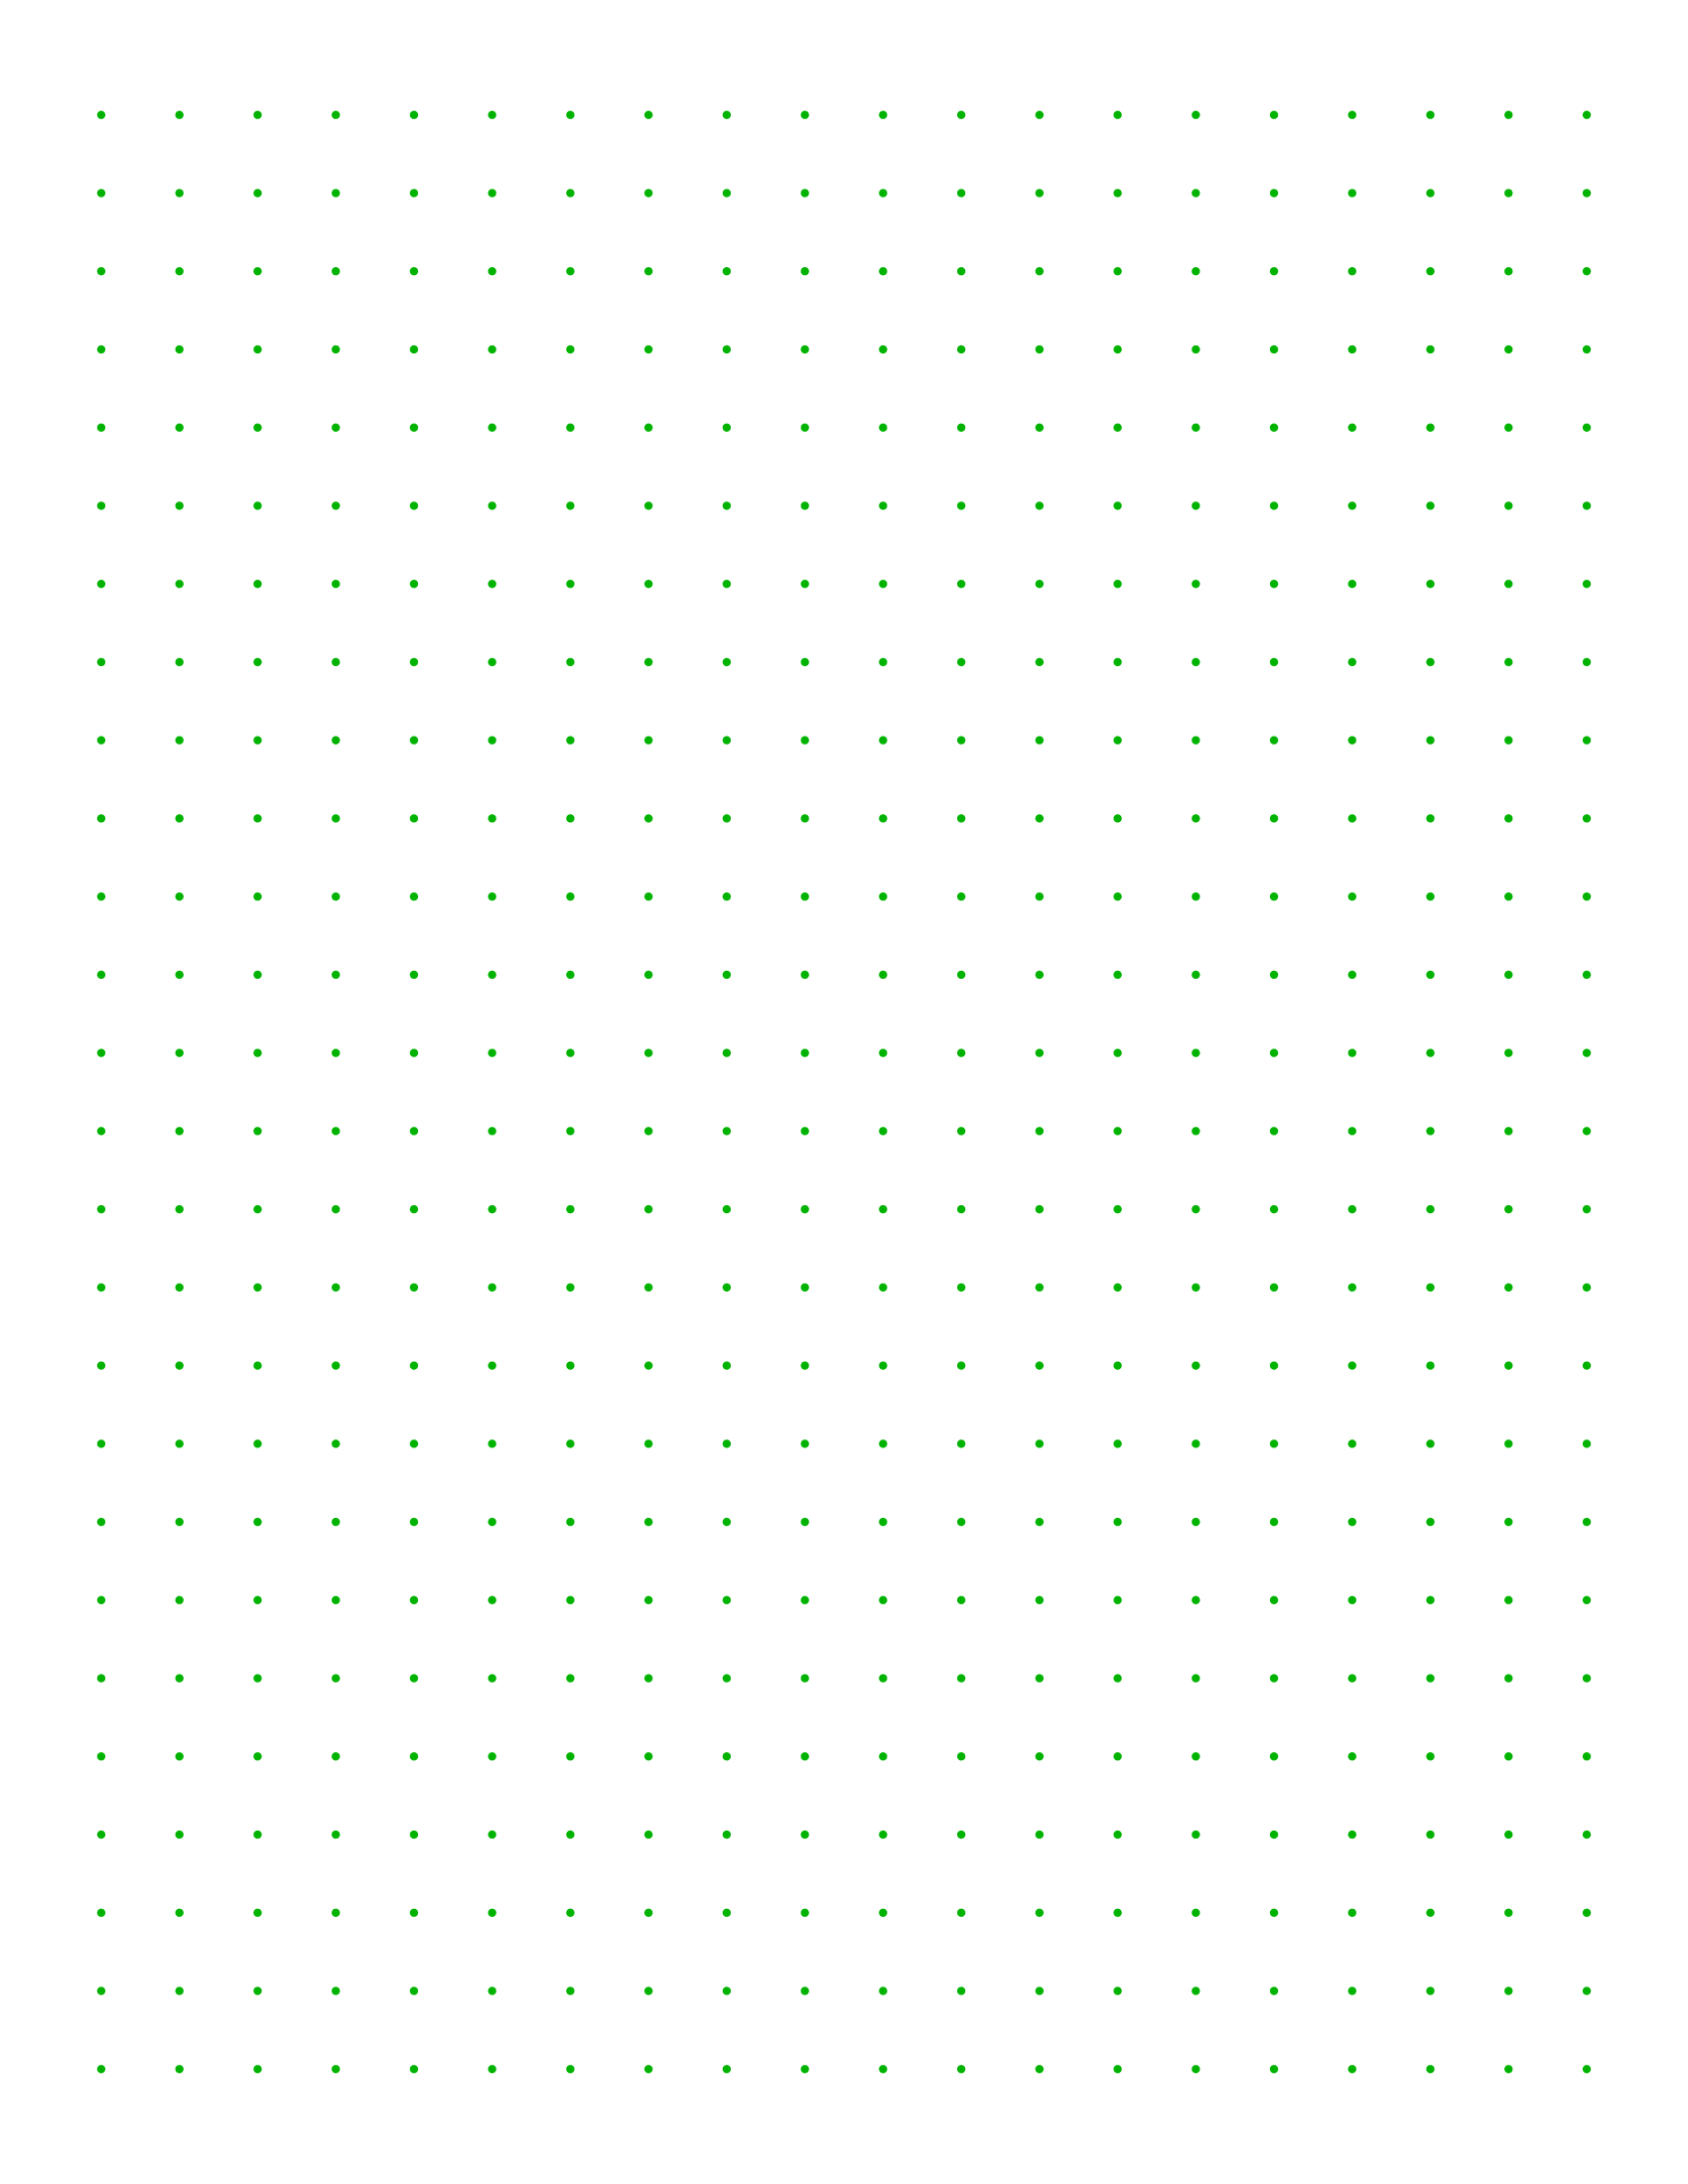 Printable Dot Grid Paper Printable World Holiday